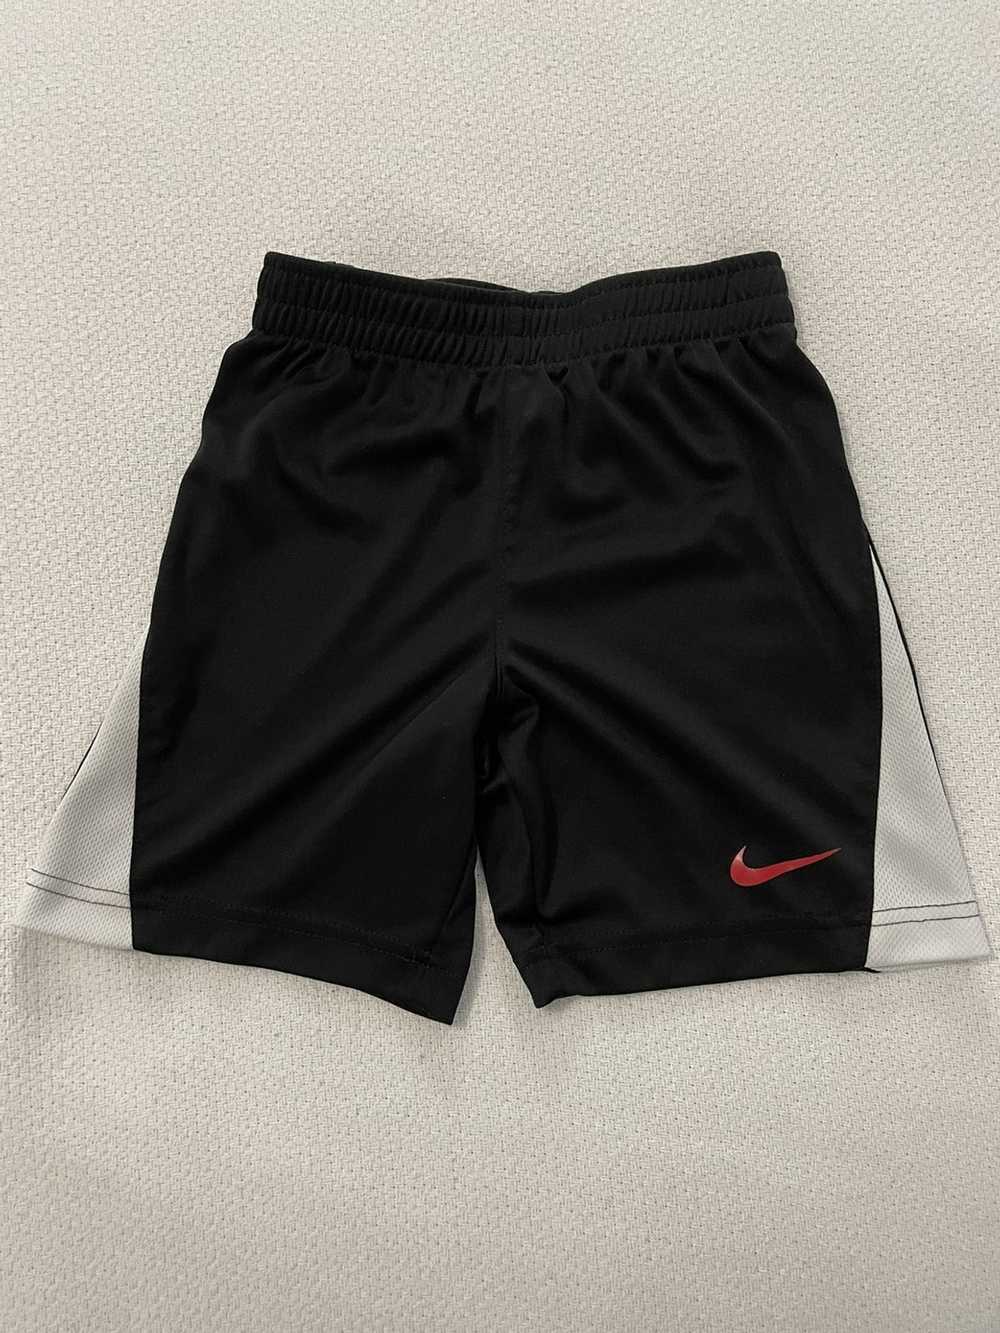 Nike Nike Shorts - Boys Size 5T - image 1